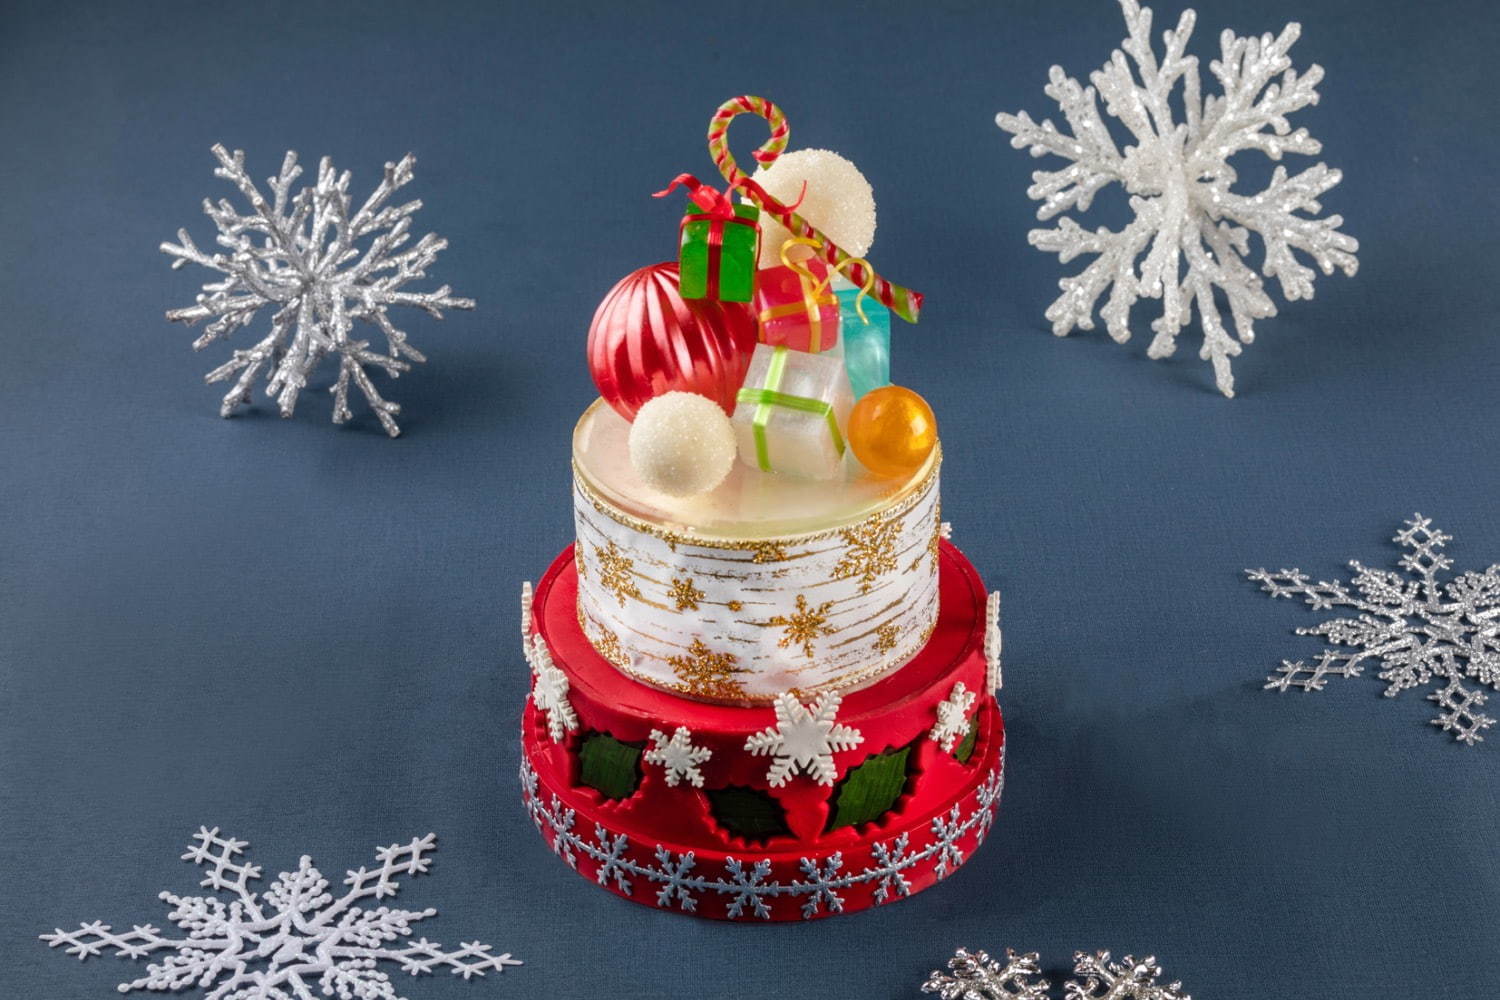 グランド ハイアット 東京のクリスマス 飴細工のオーナメント を飾った2段ケーキなど ファッションプレス